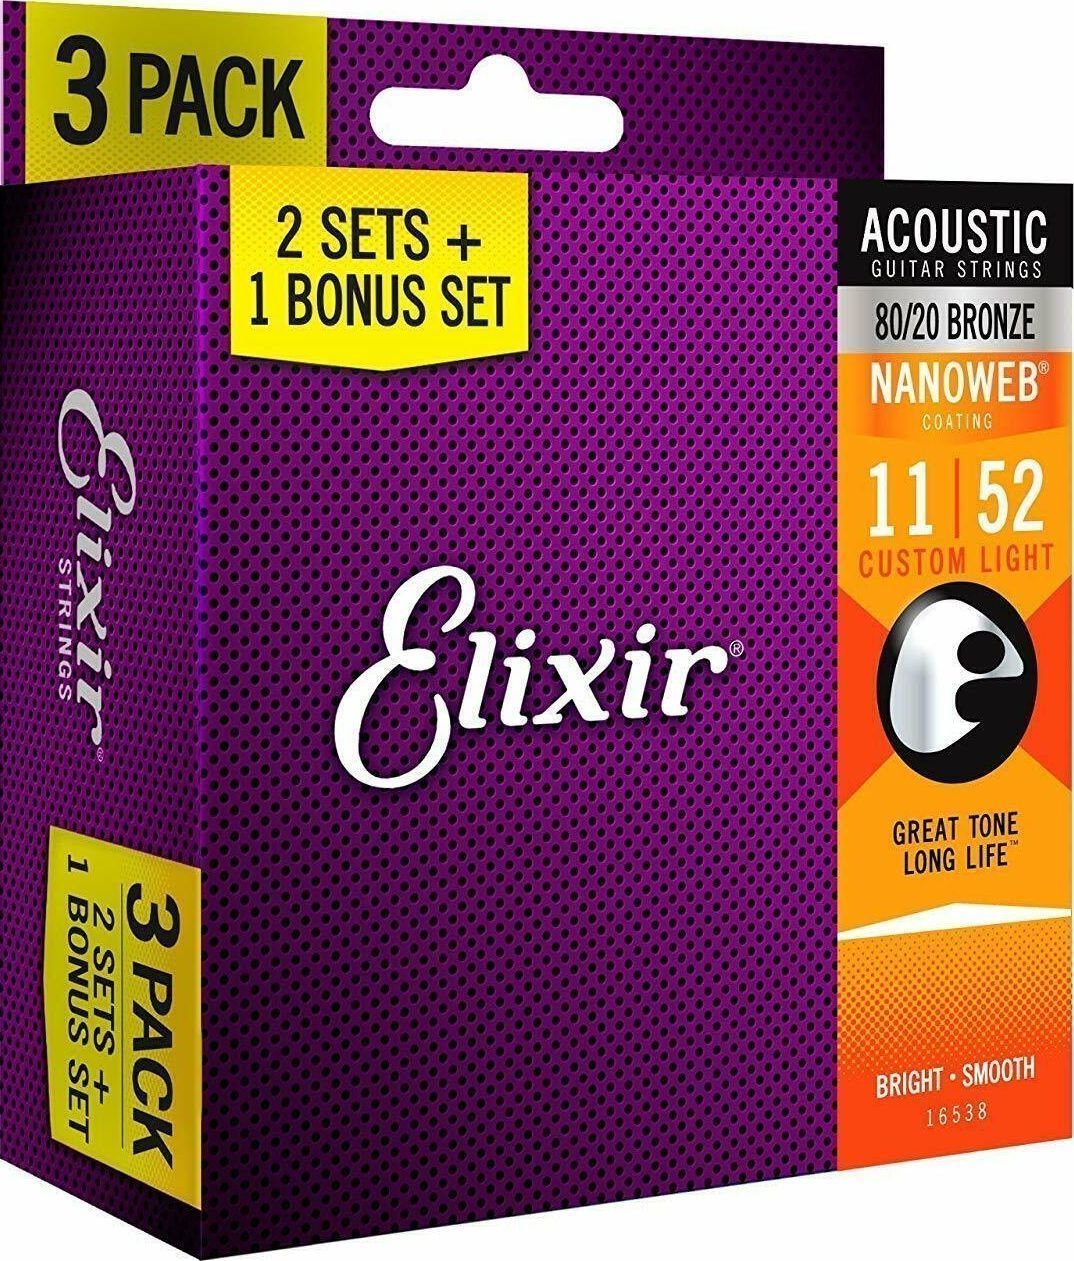 Guitar strings Elixir 16538 NANOWEB Coating Custom Light 11-52 3-PACK